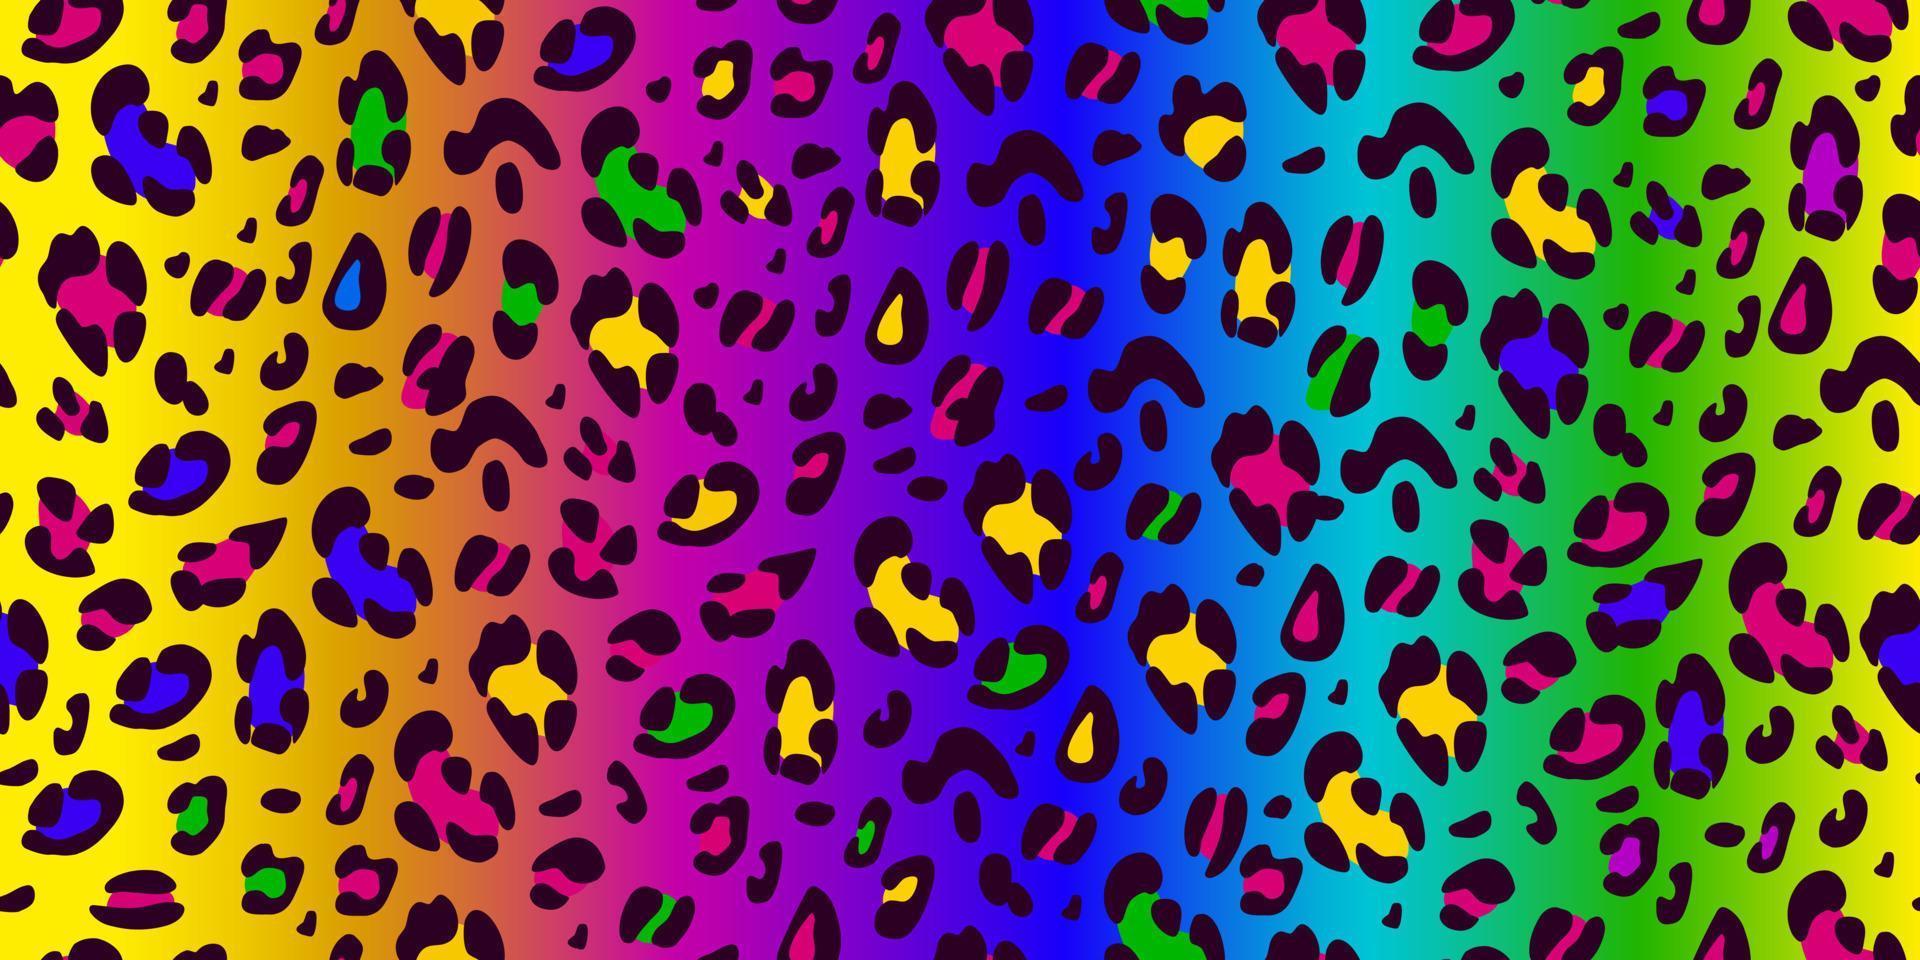 regenboog luipaard naadloos patroon. dierlijke heldere print. neon vector achtergrond.